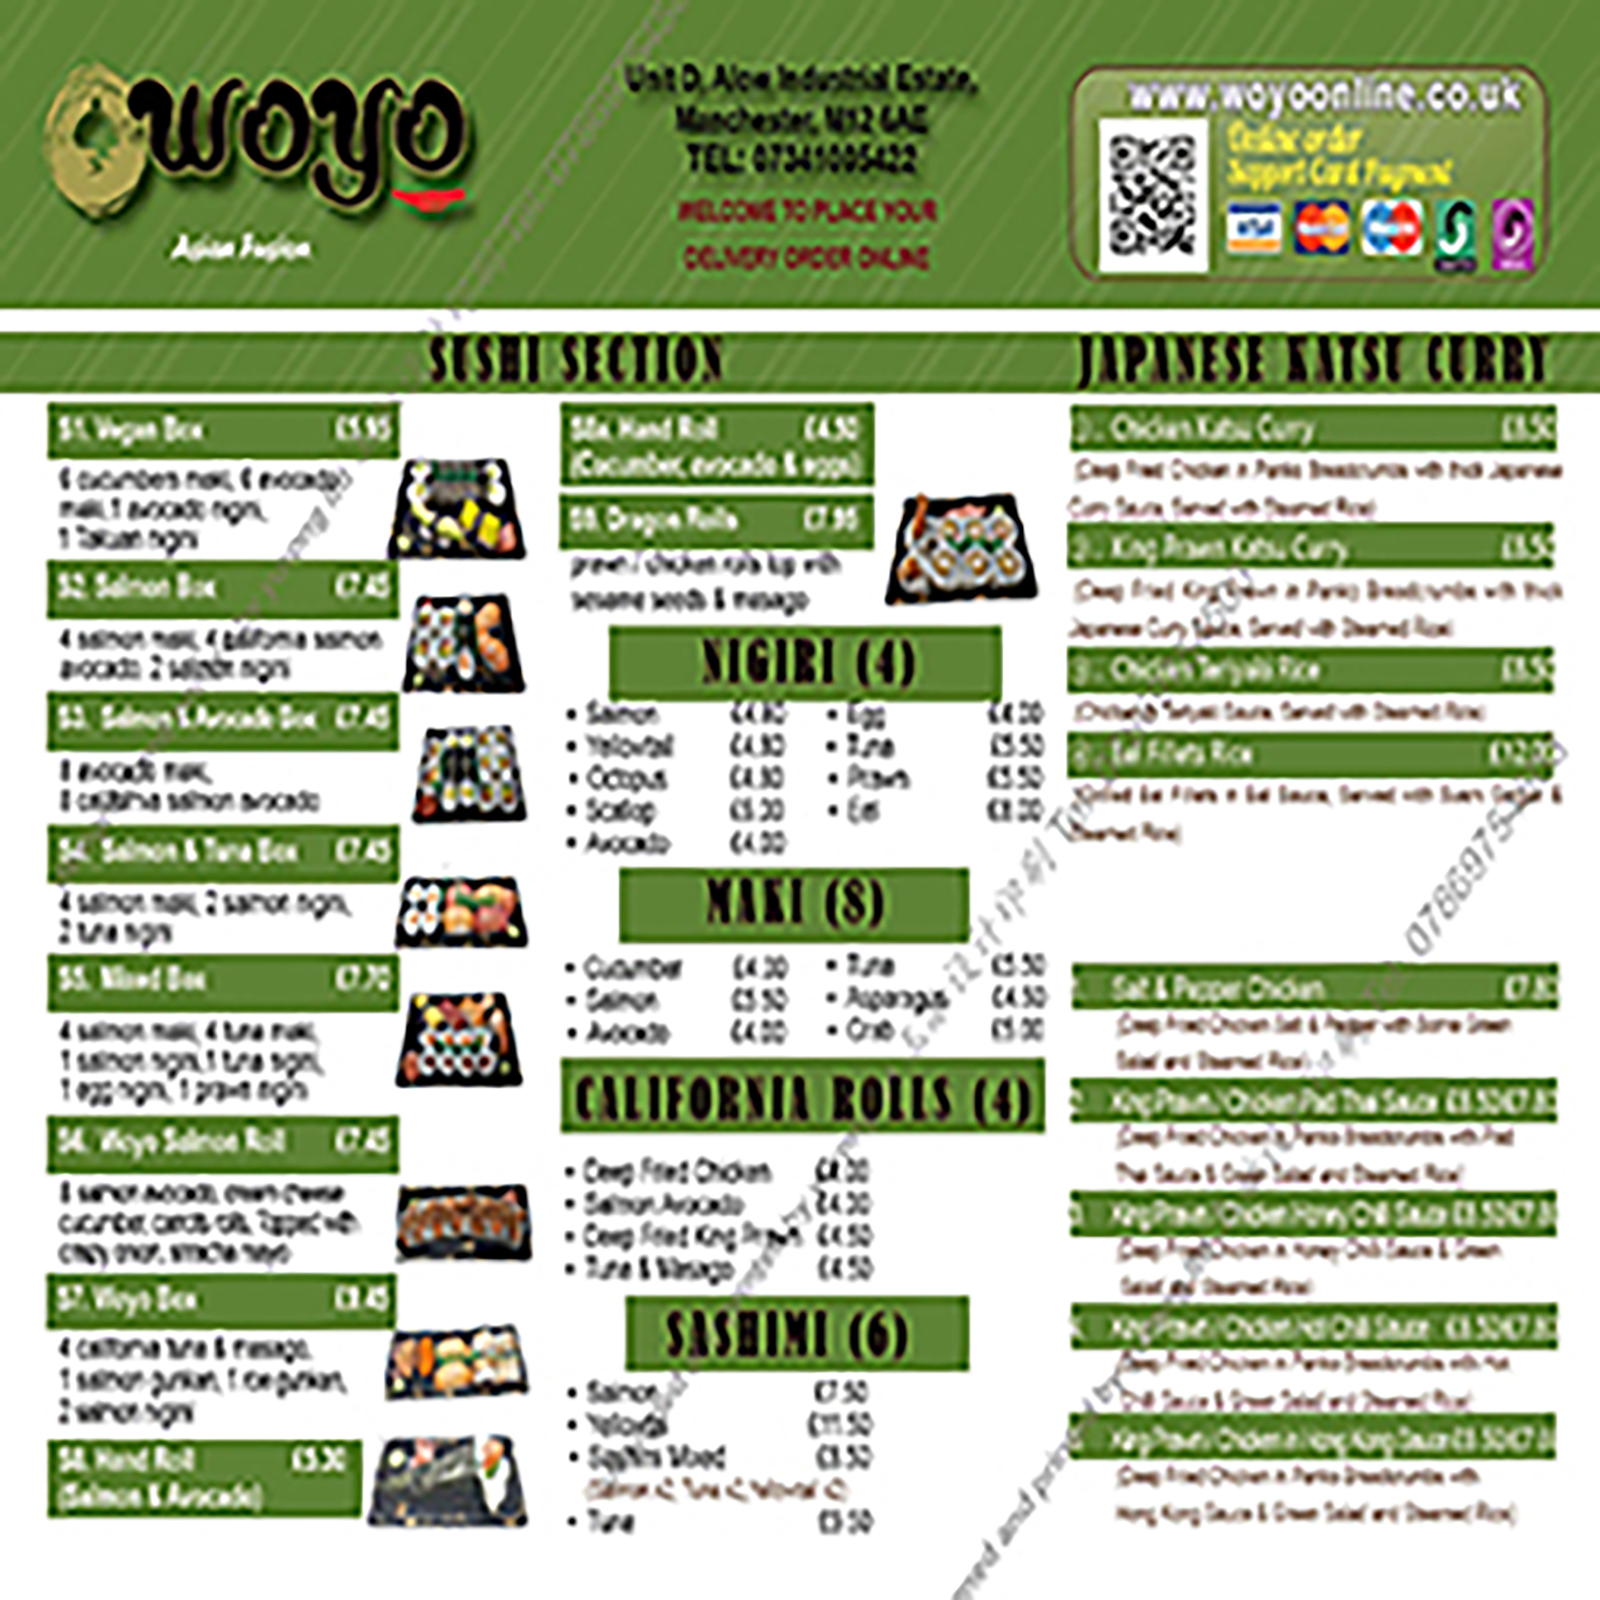 A5 menu or leaflet